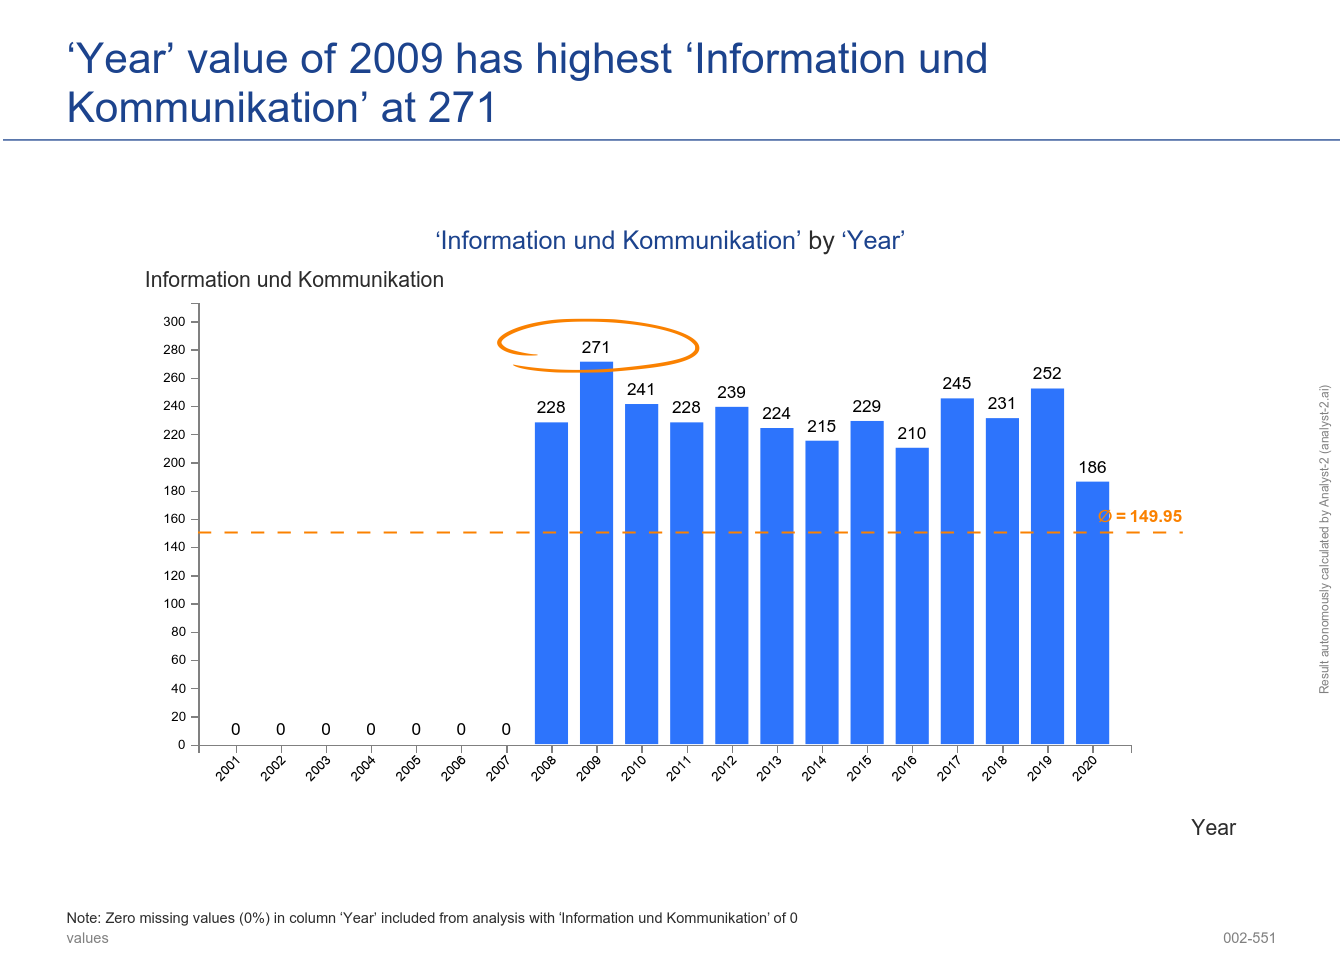 The ‘Year’ value of 2009 has the highest ‘Information und Kommunikation’ at 271. (Gewerbemeldungen (Jahreszahlen) - 002-551)